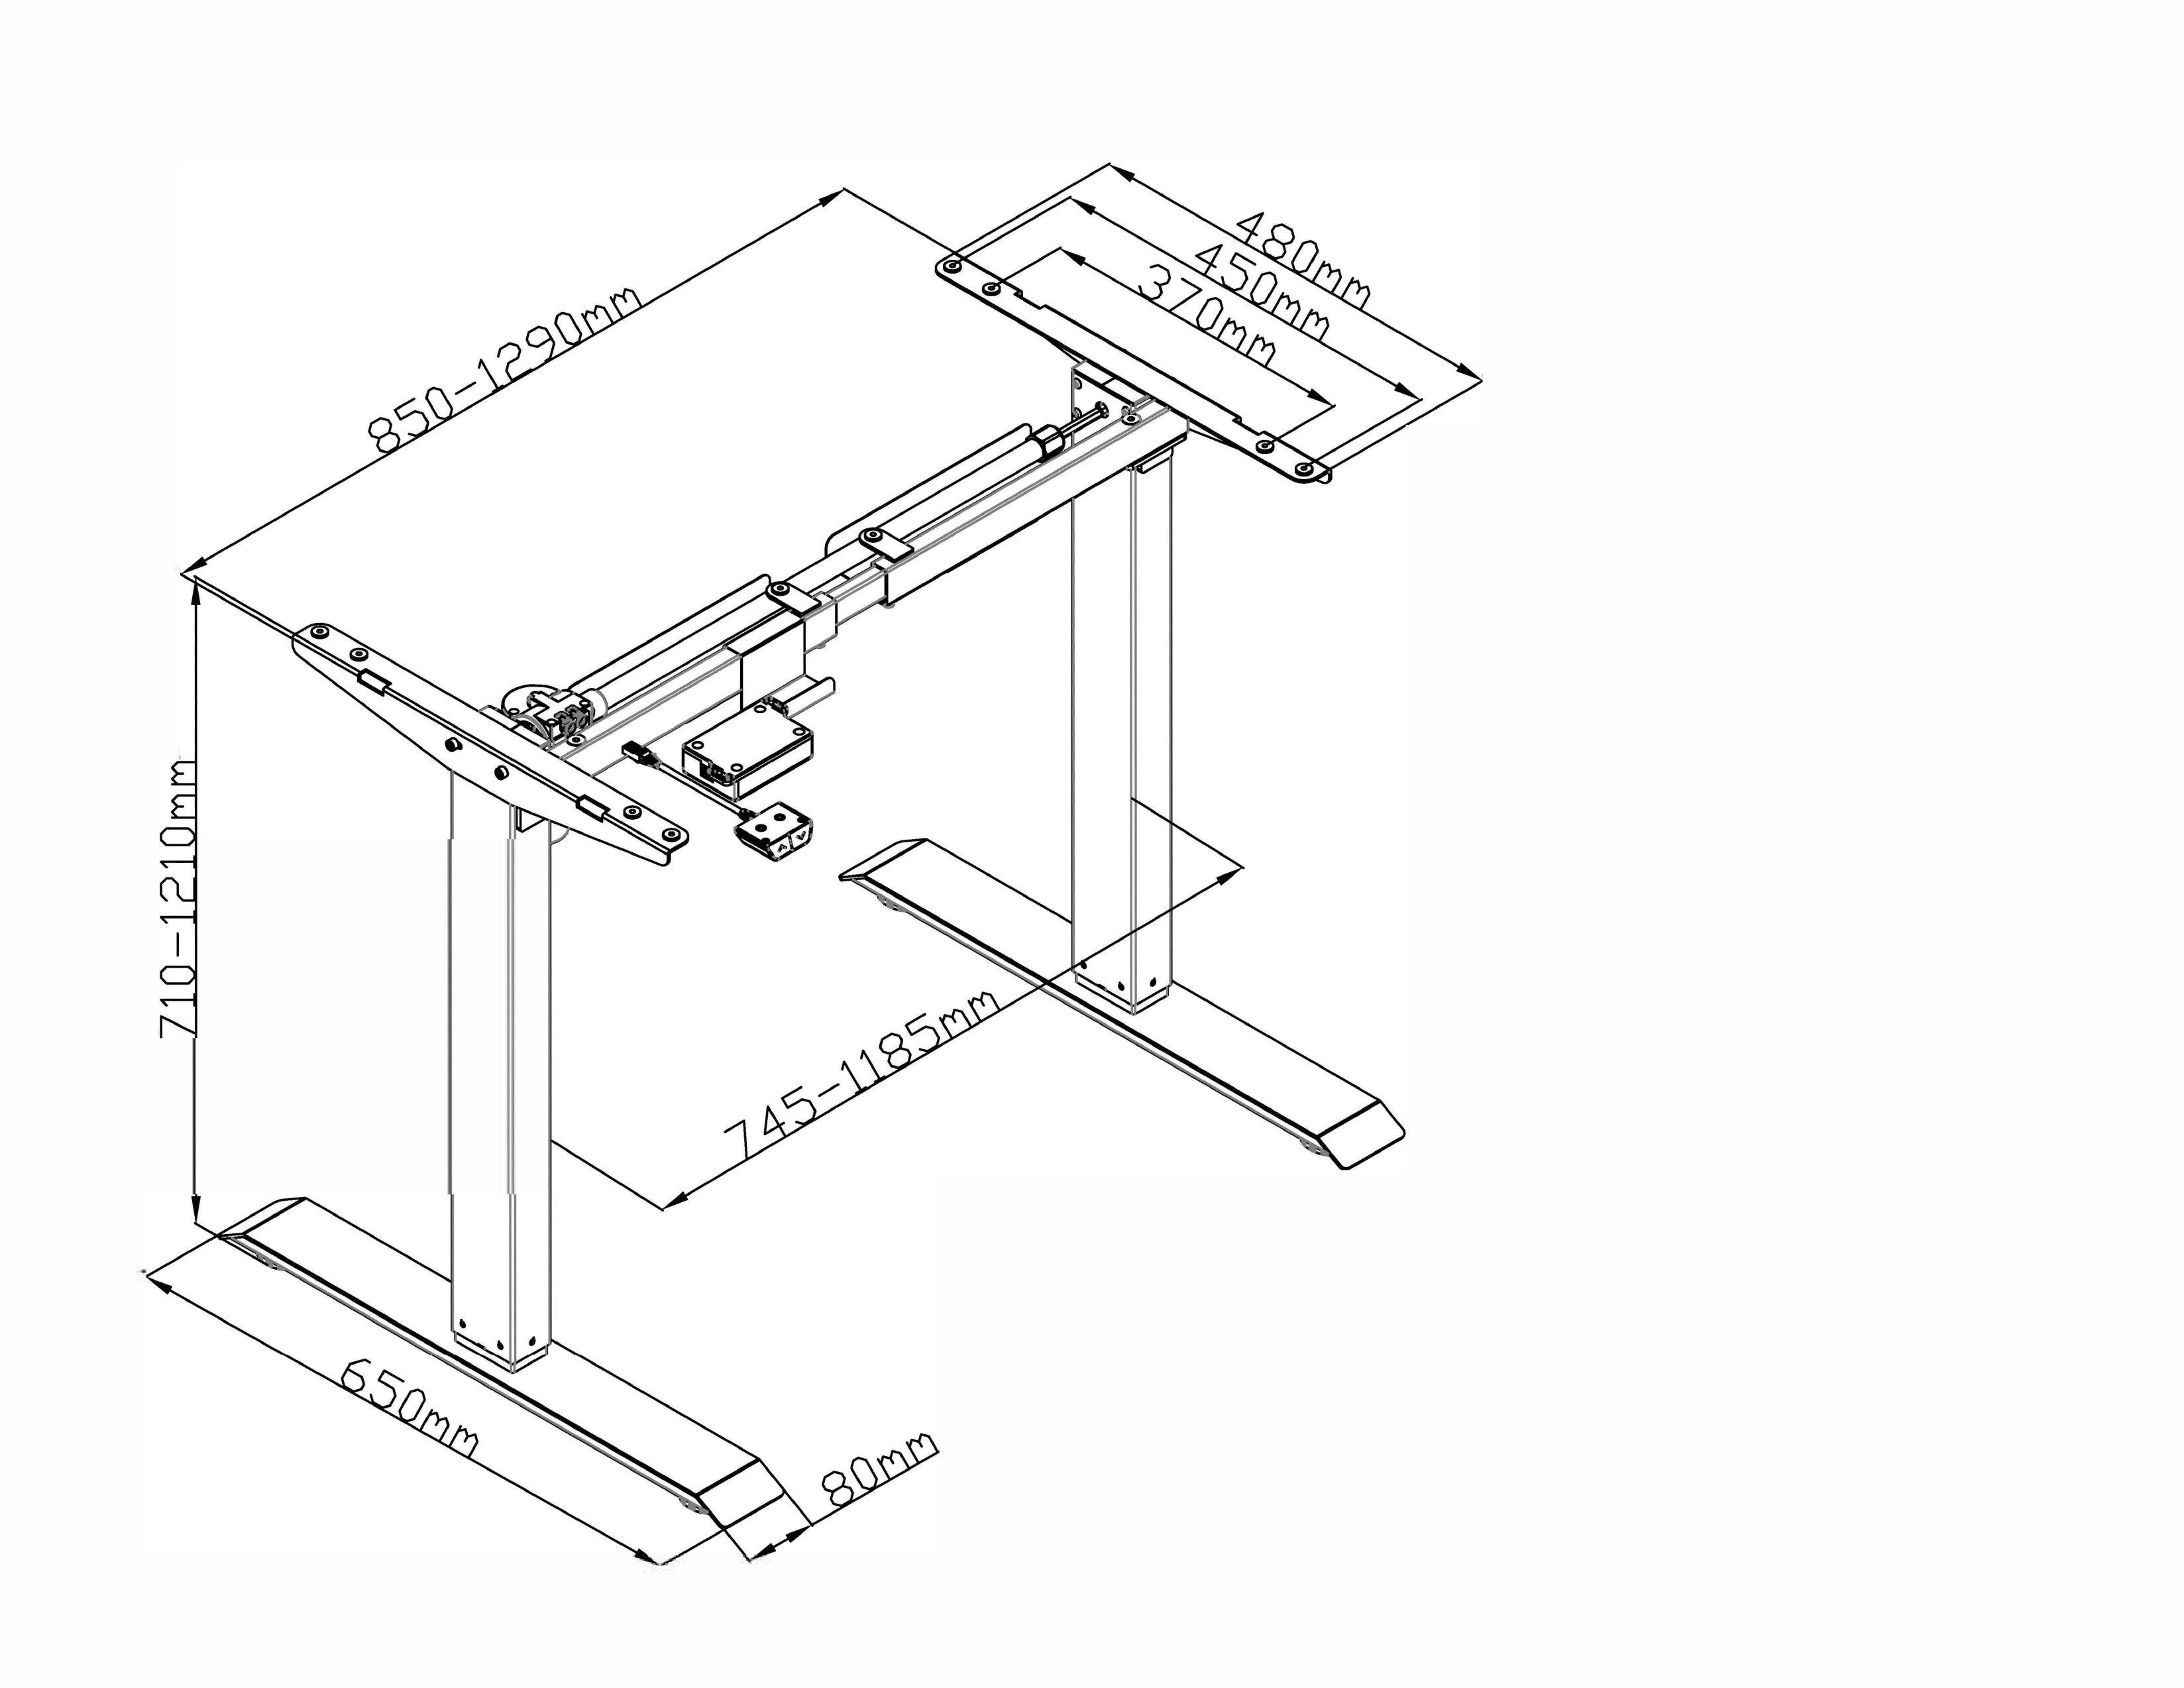 AGIl Schreibtisch elektrisch höhenverstellbarer Schreibtisch Weiß-Schwarz - 140*70cm (komplett-Set)